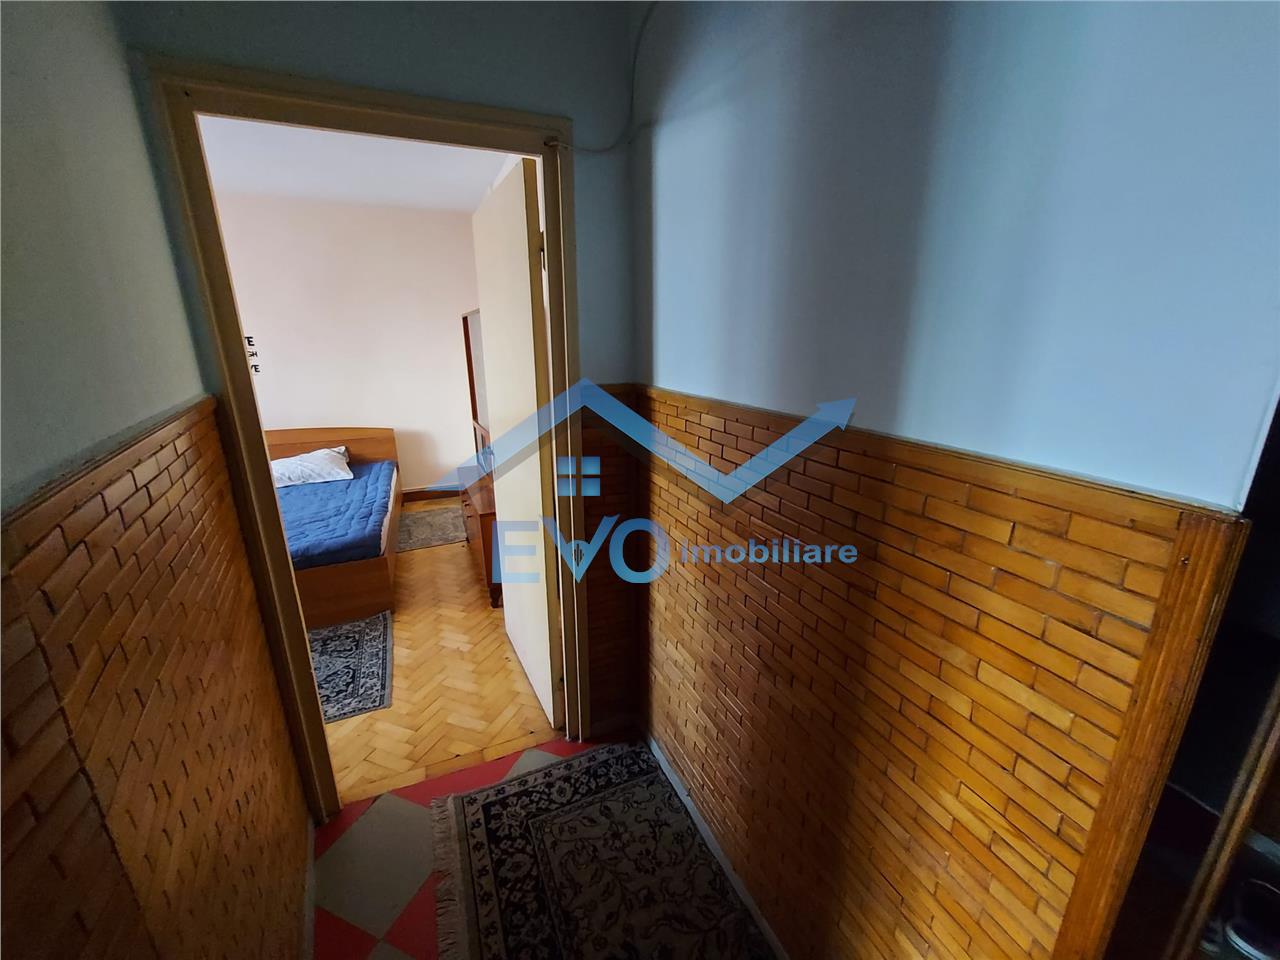 Apartament 2 camere decomandat de inchiriat in Alexandru (